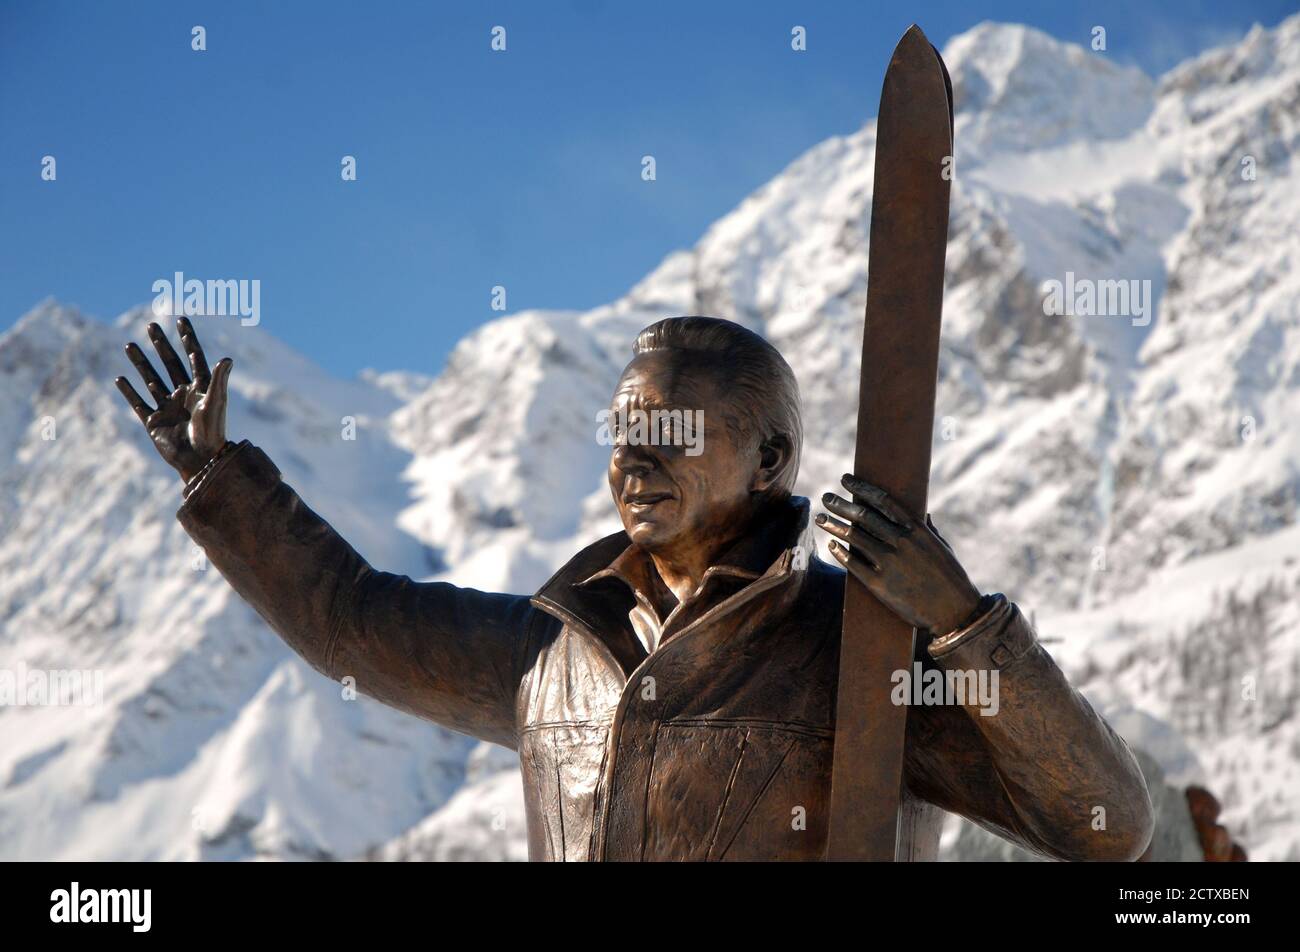 Cervinia, Aostatal/Italy-02/12/2014-die Bronzestatue, die dem italienisch-amerikanischen Fernsehmoderator Mike Bongiorno gewidmet ist. Stockfoto